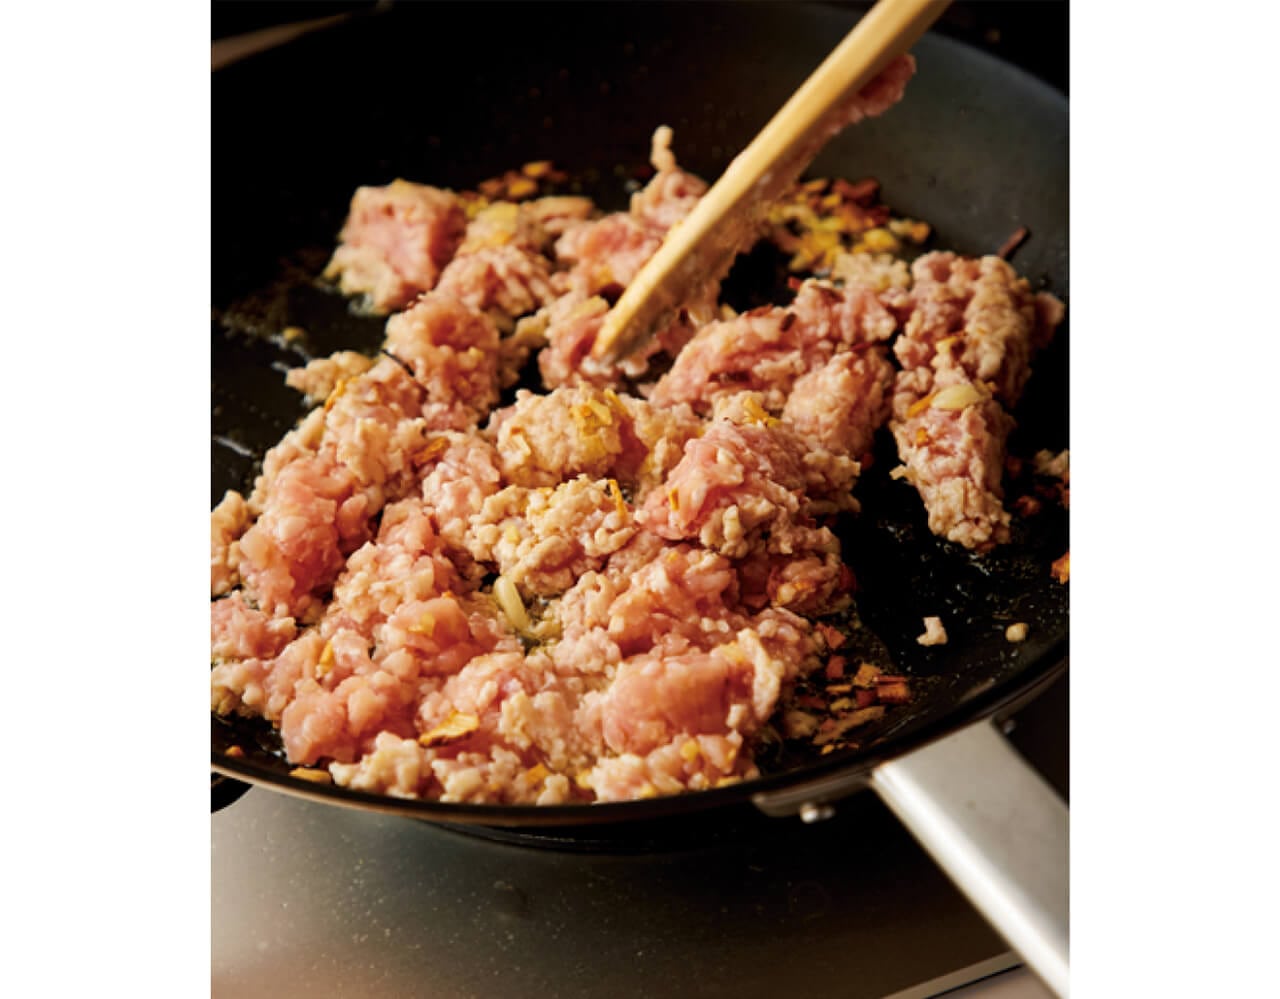 ひき肉を炒めるときはパラパラになるまでほぐさずに、かたまりを残して焼きつける。肉感が出て、食感もよくなる